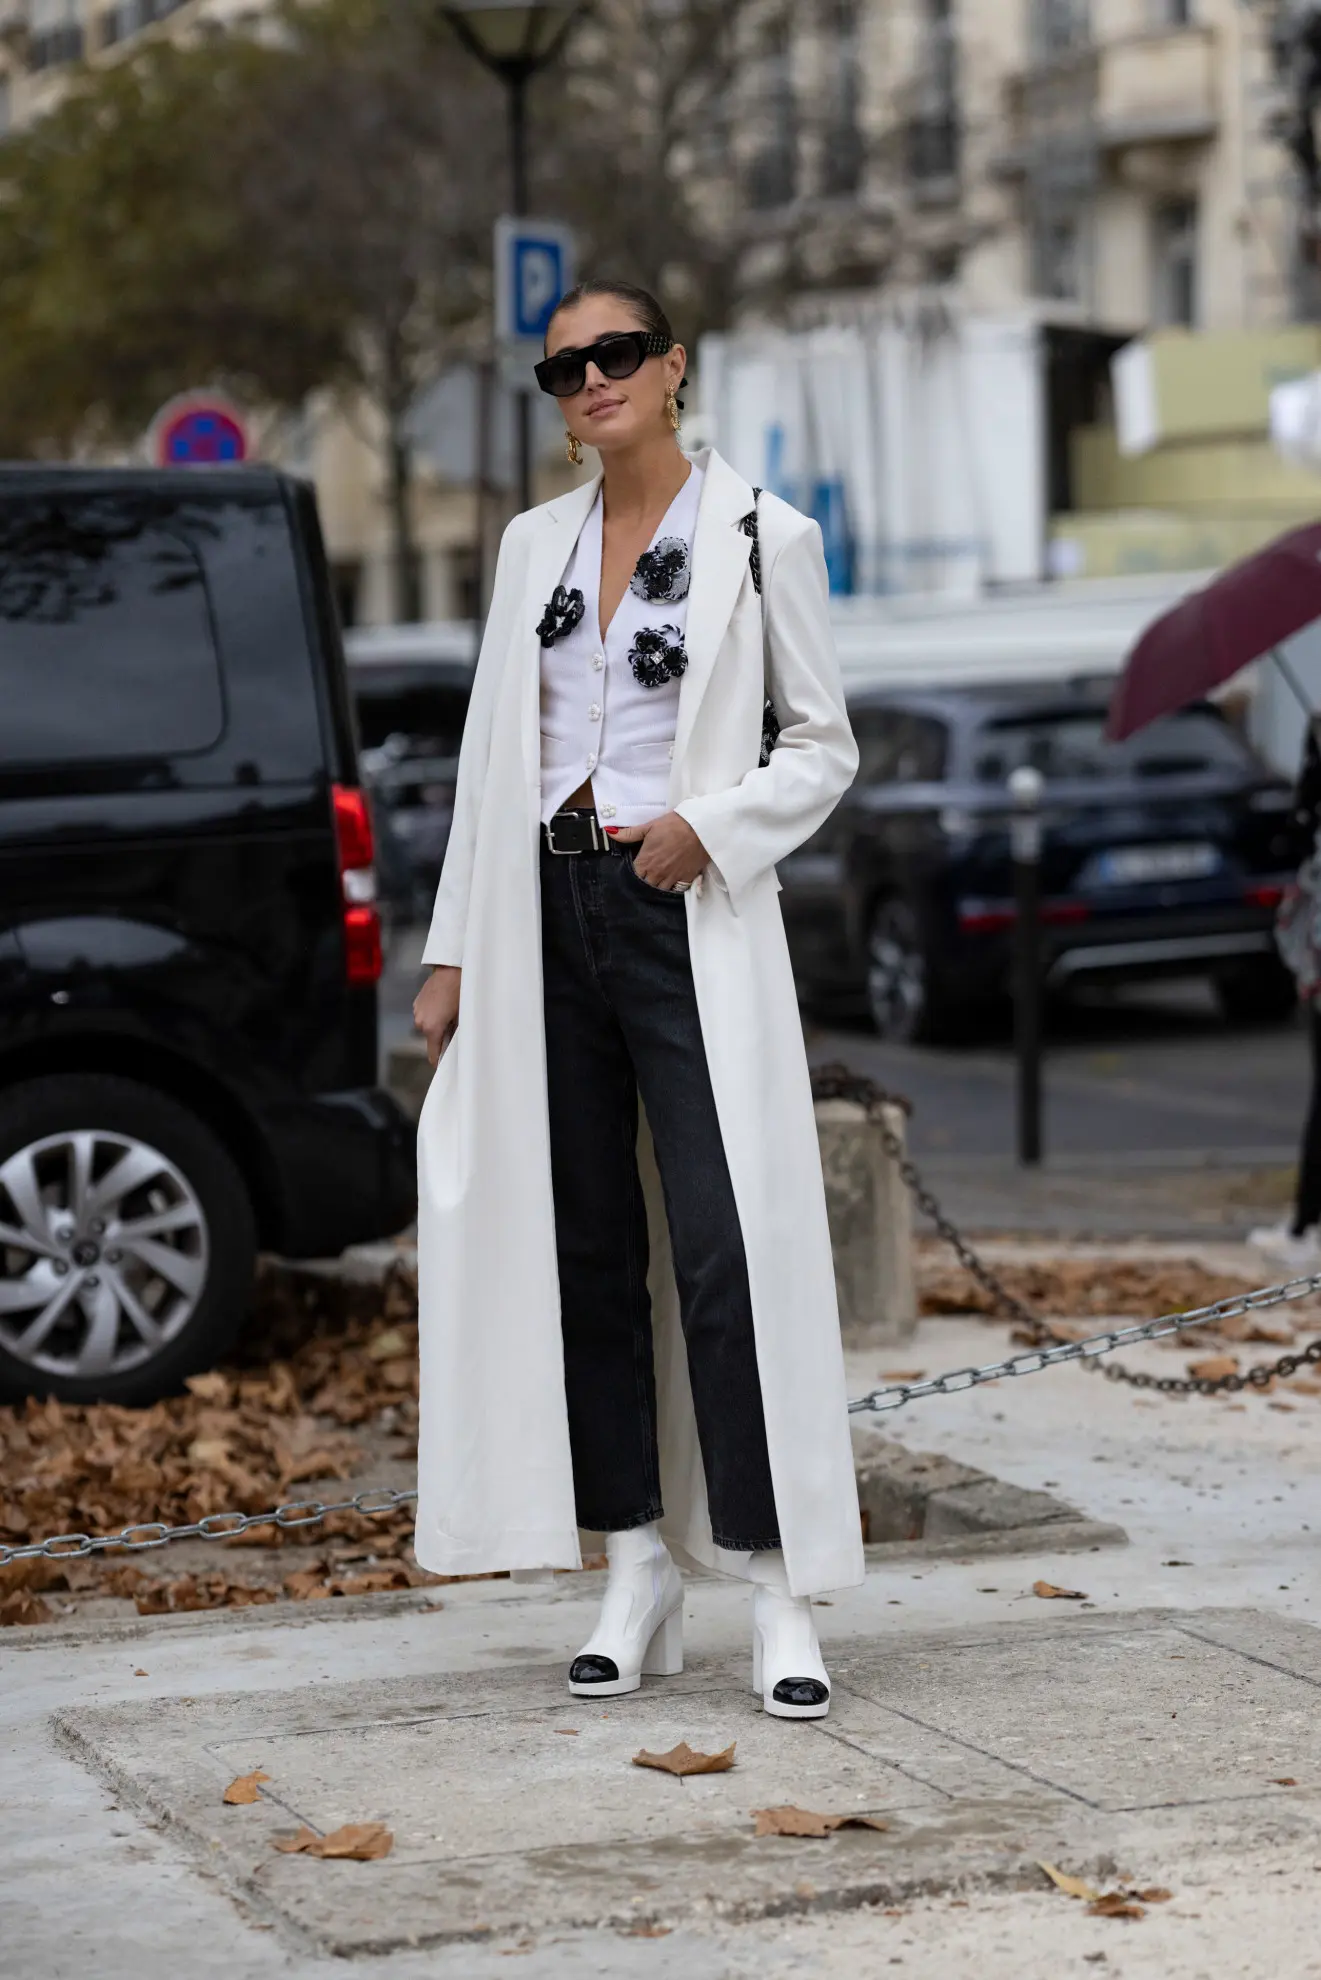 a woman at Paris fashion week wearing a black and white Chanel ensemble